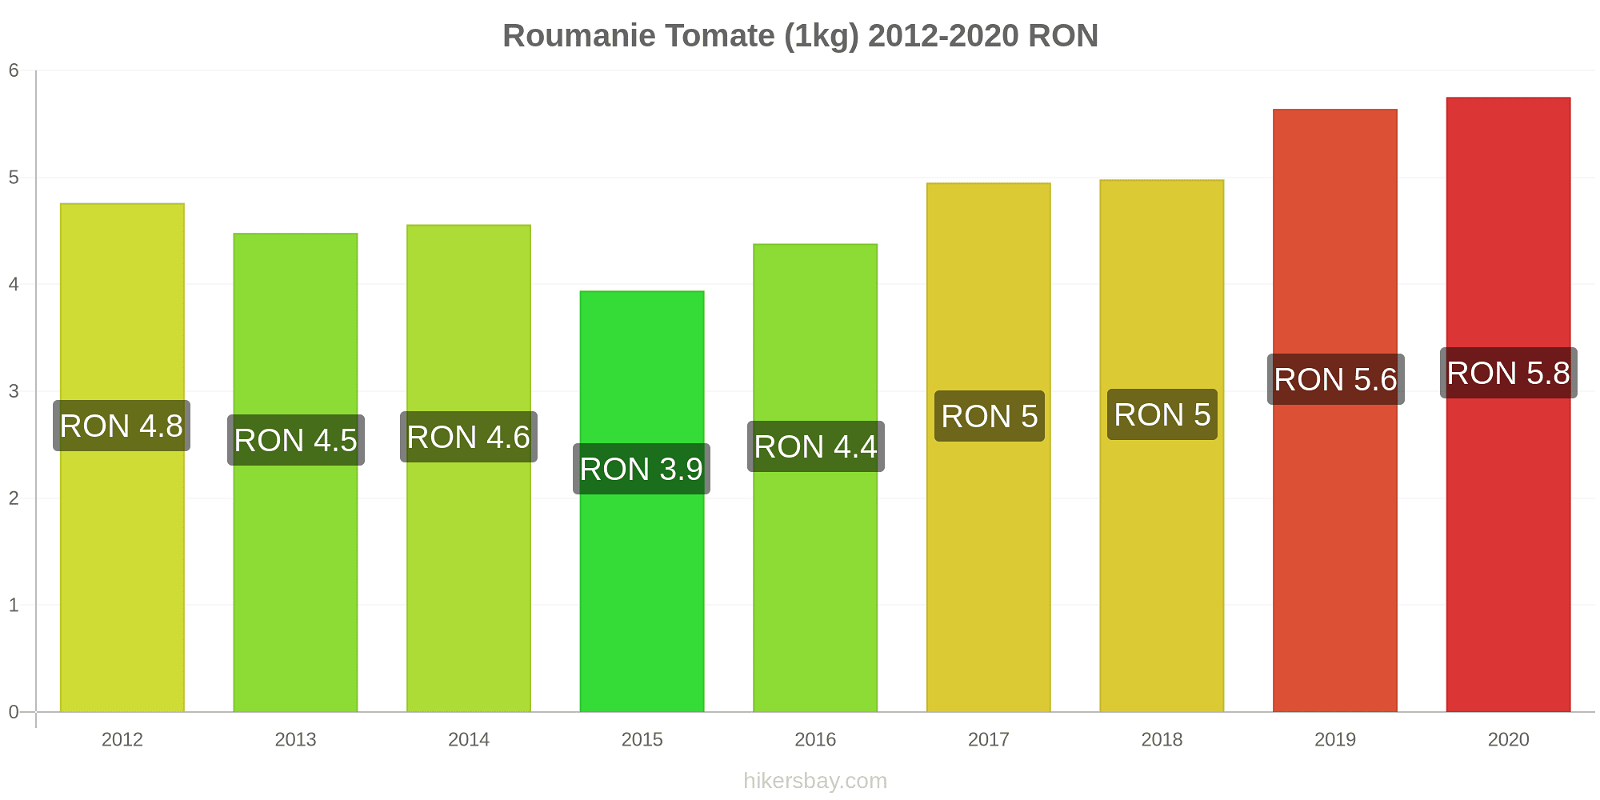 Roumanie changements de prix Tomate (1kg) hikersbay.com